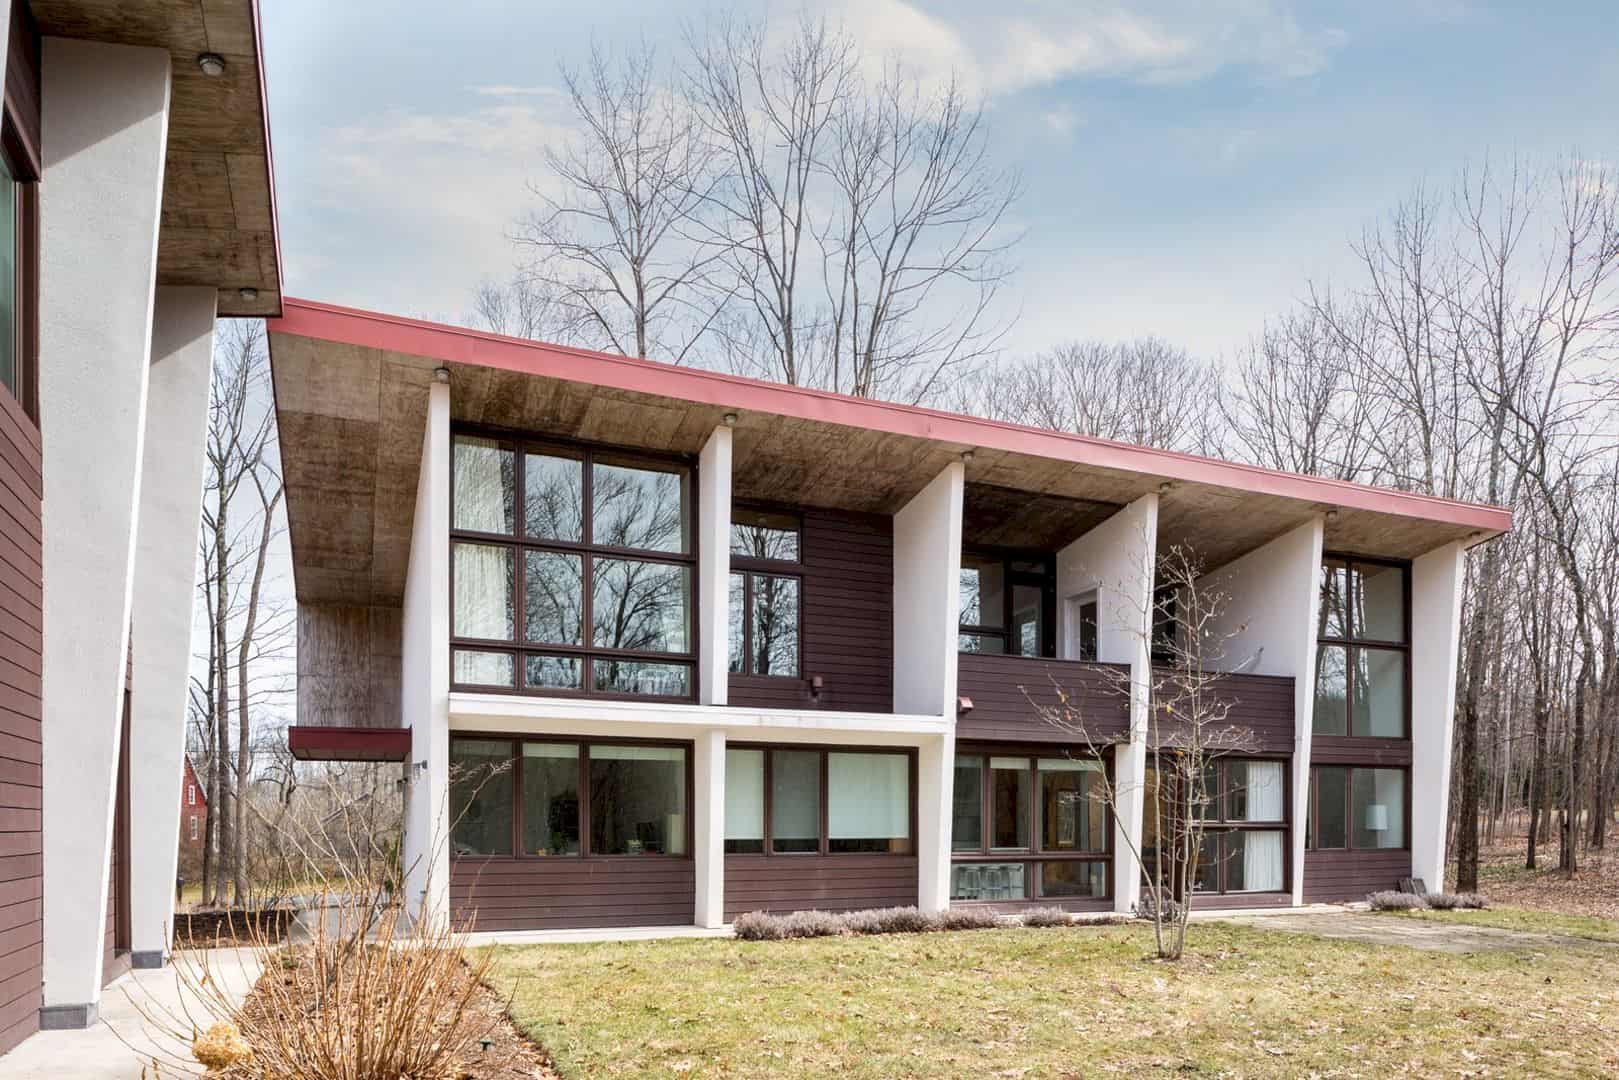 A Rural Eco Friendly Retreat In Connecticut Designed By Lynn Gaffney 8